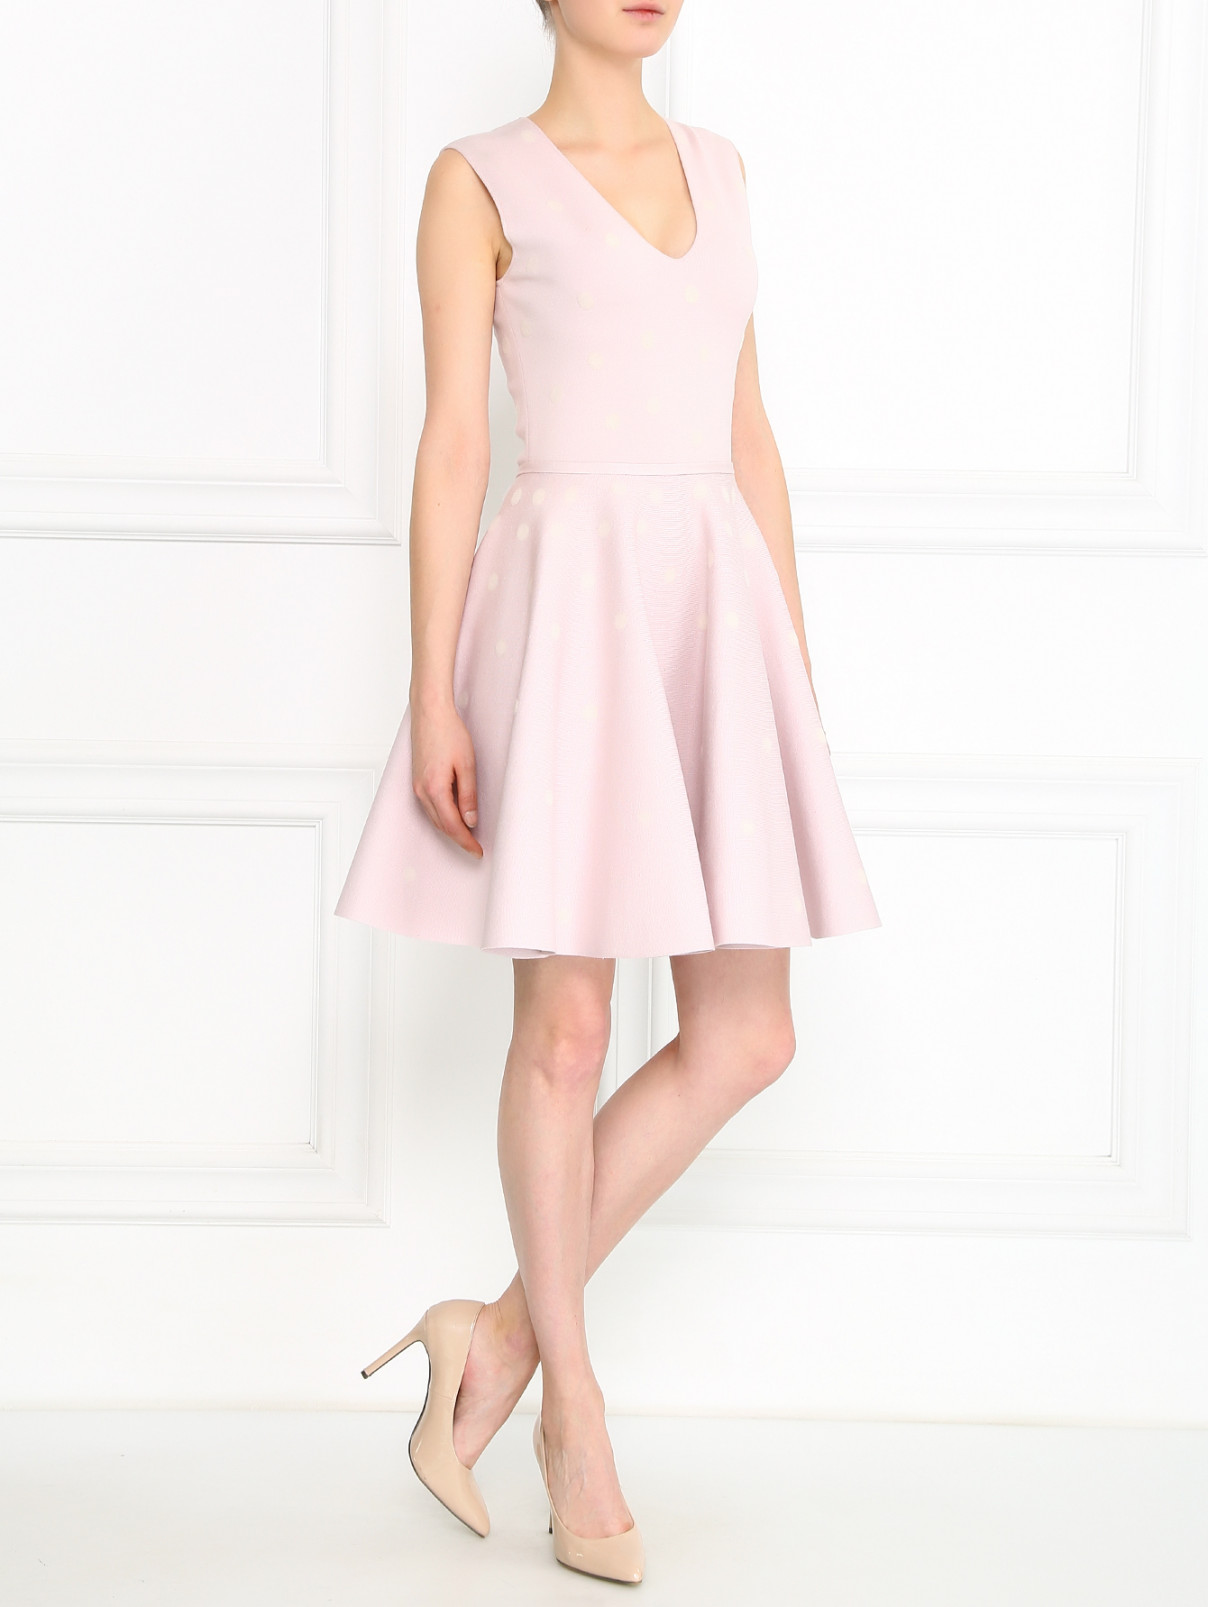 Трикотажное платье с узором "горох" Giambattista Valli  –  Модель Общий вид  – Цвет:  Розовый